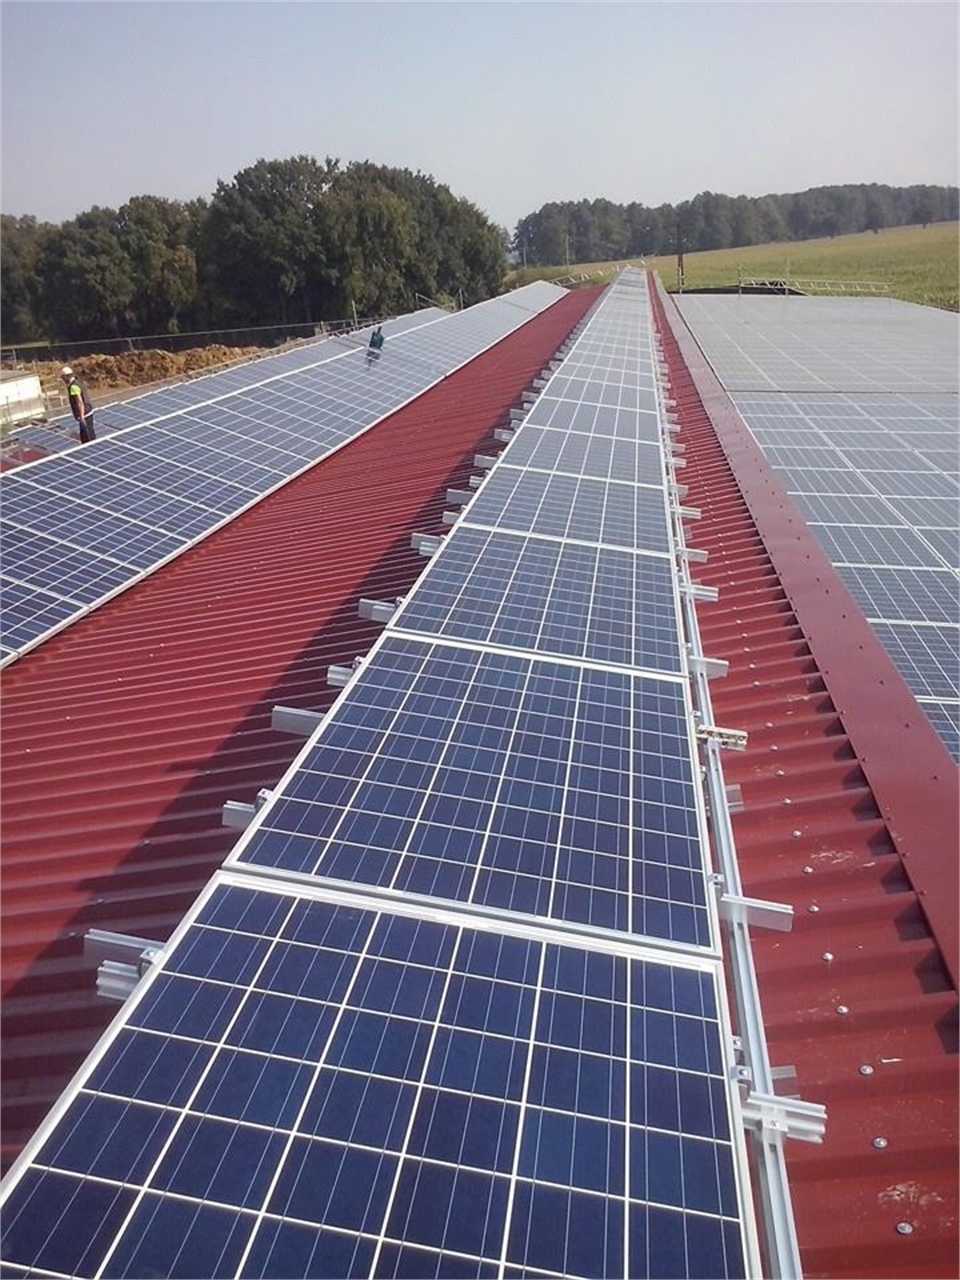 Reparatur von Dachkonstruktionen und Montage von Solarsystemen